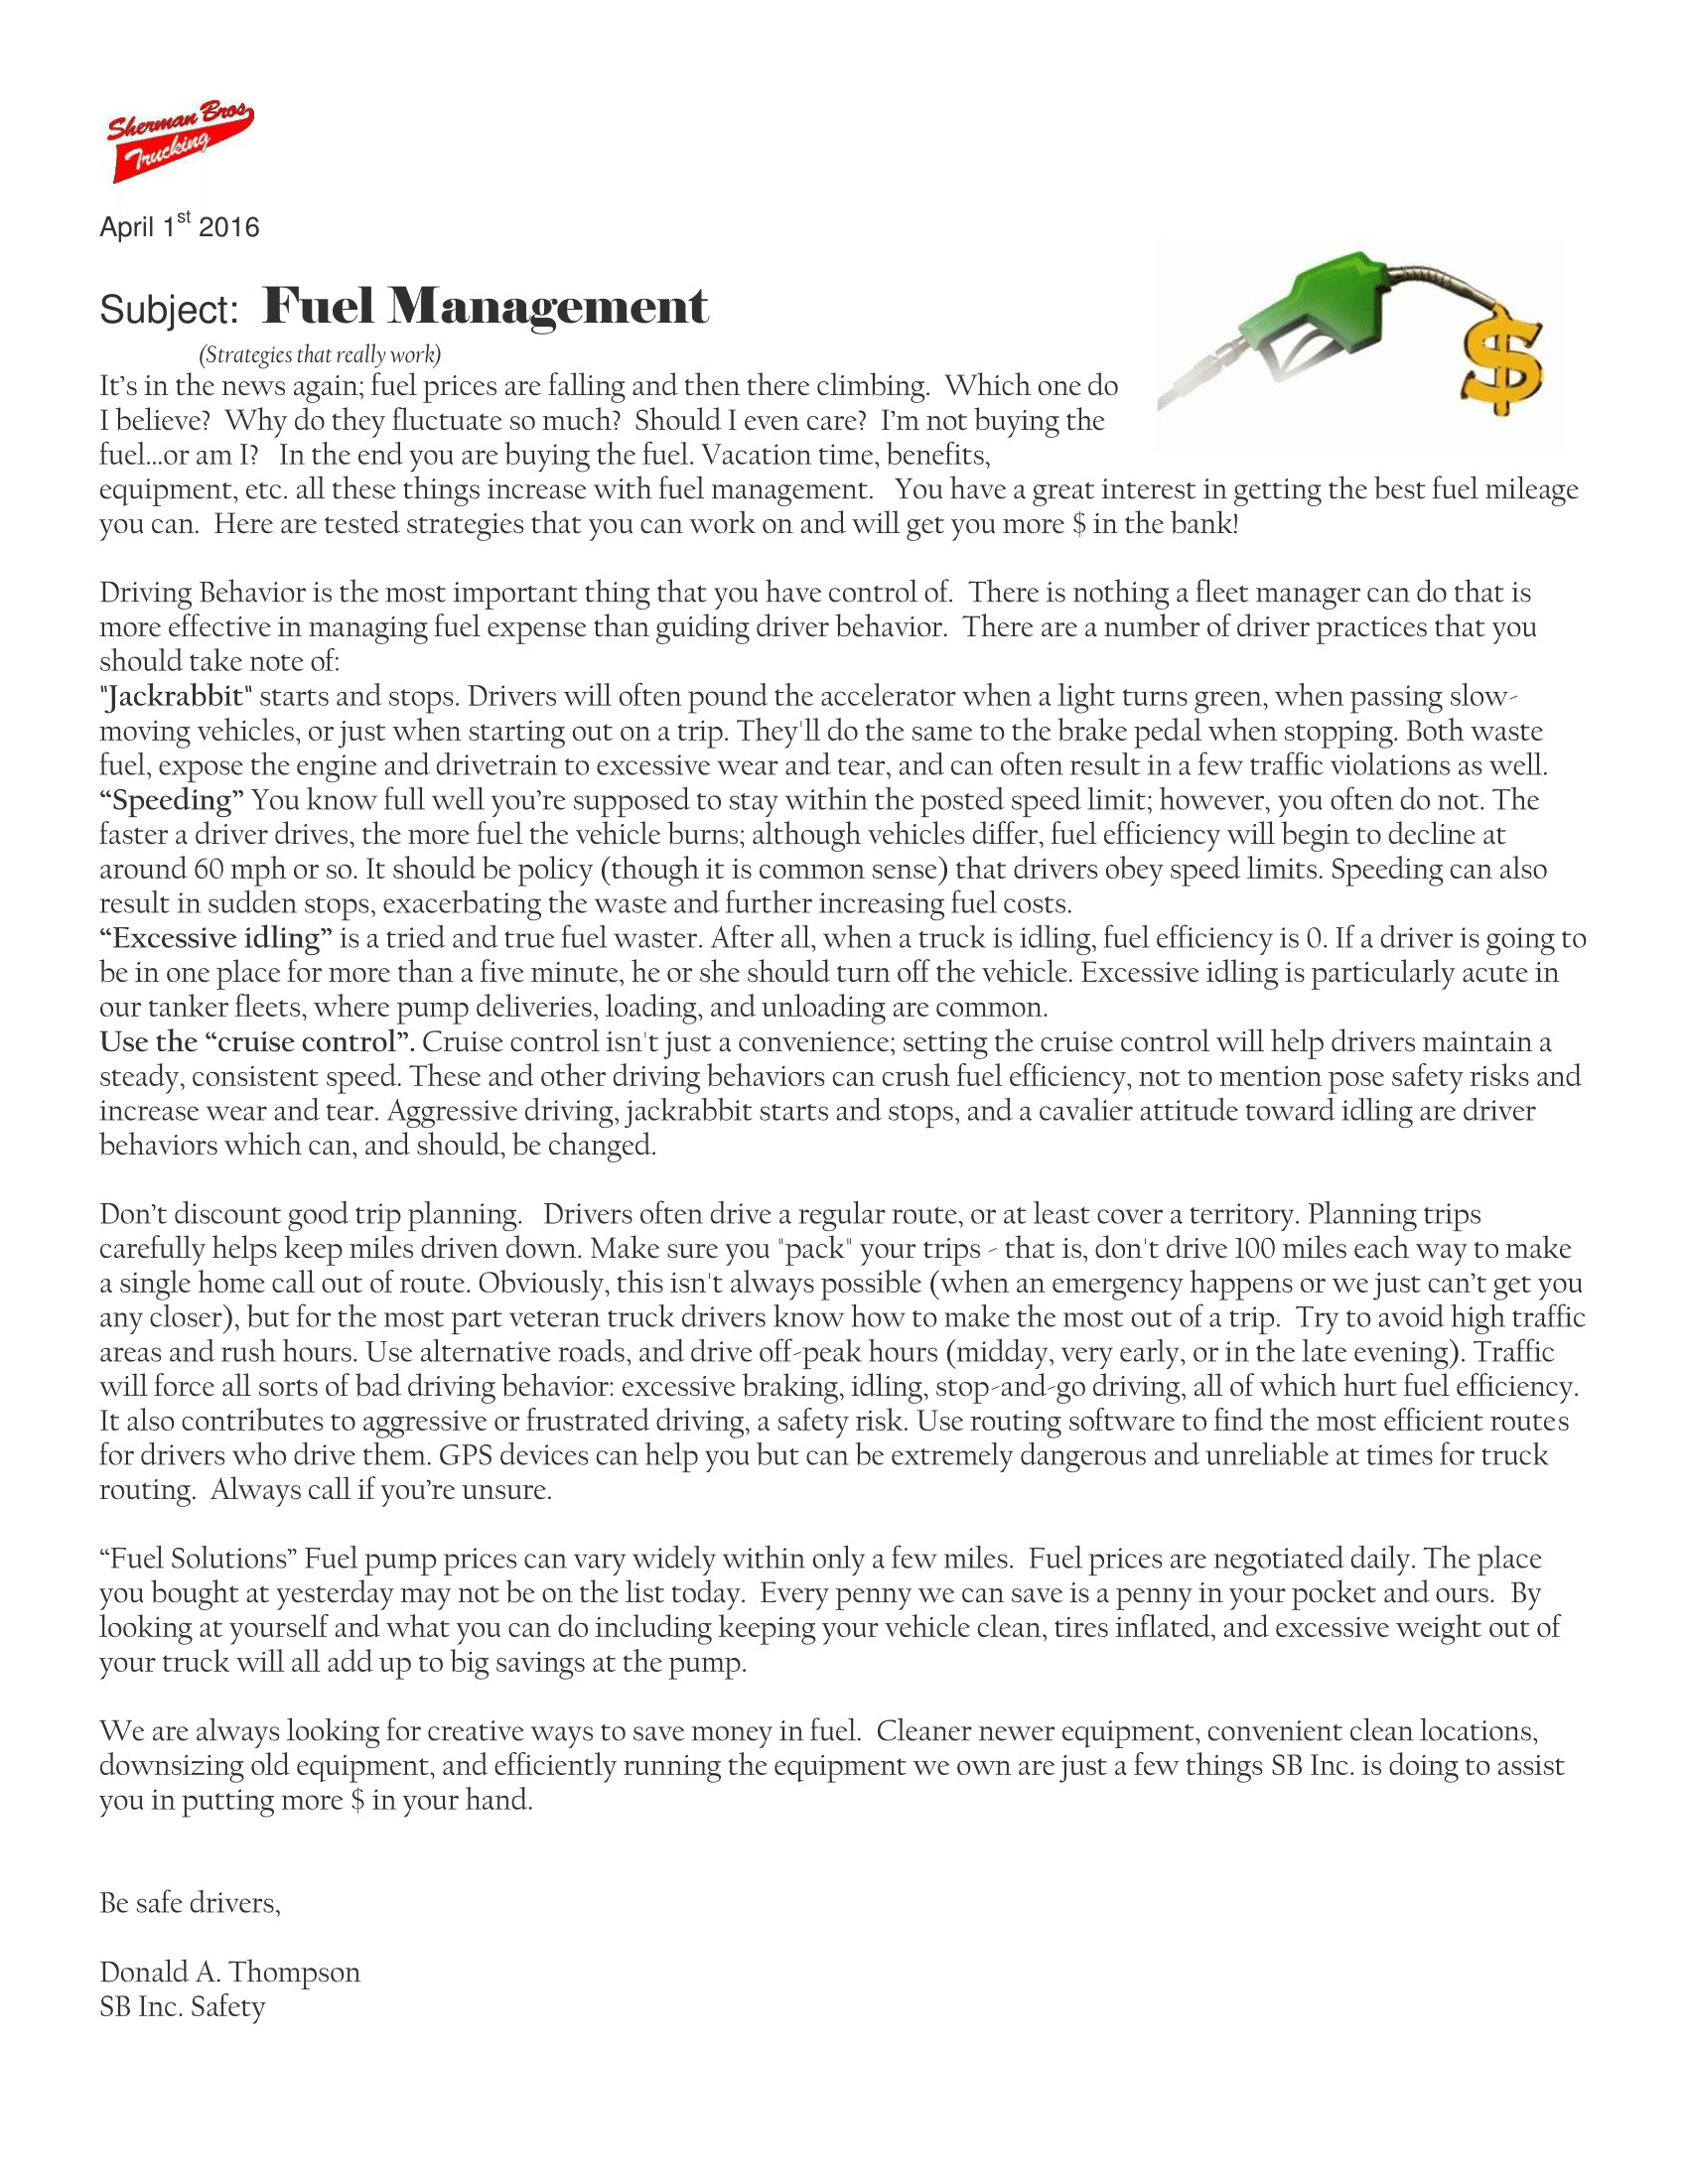 April - Fuel Management 2016-1.png